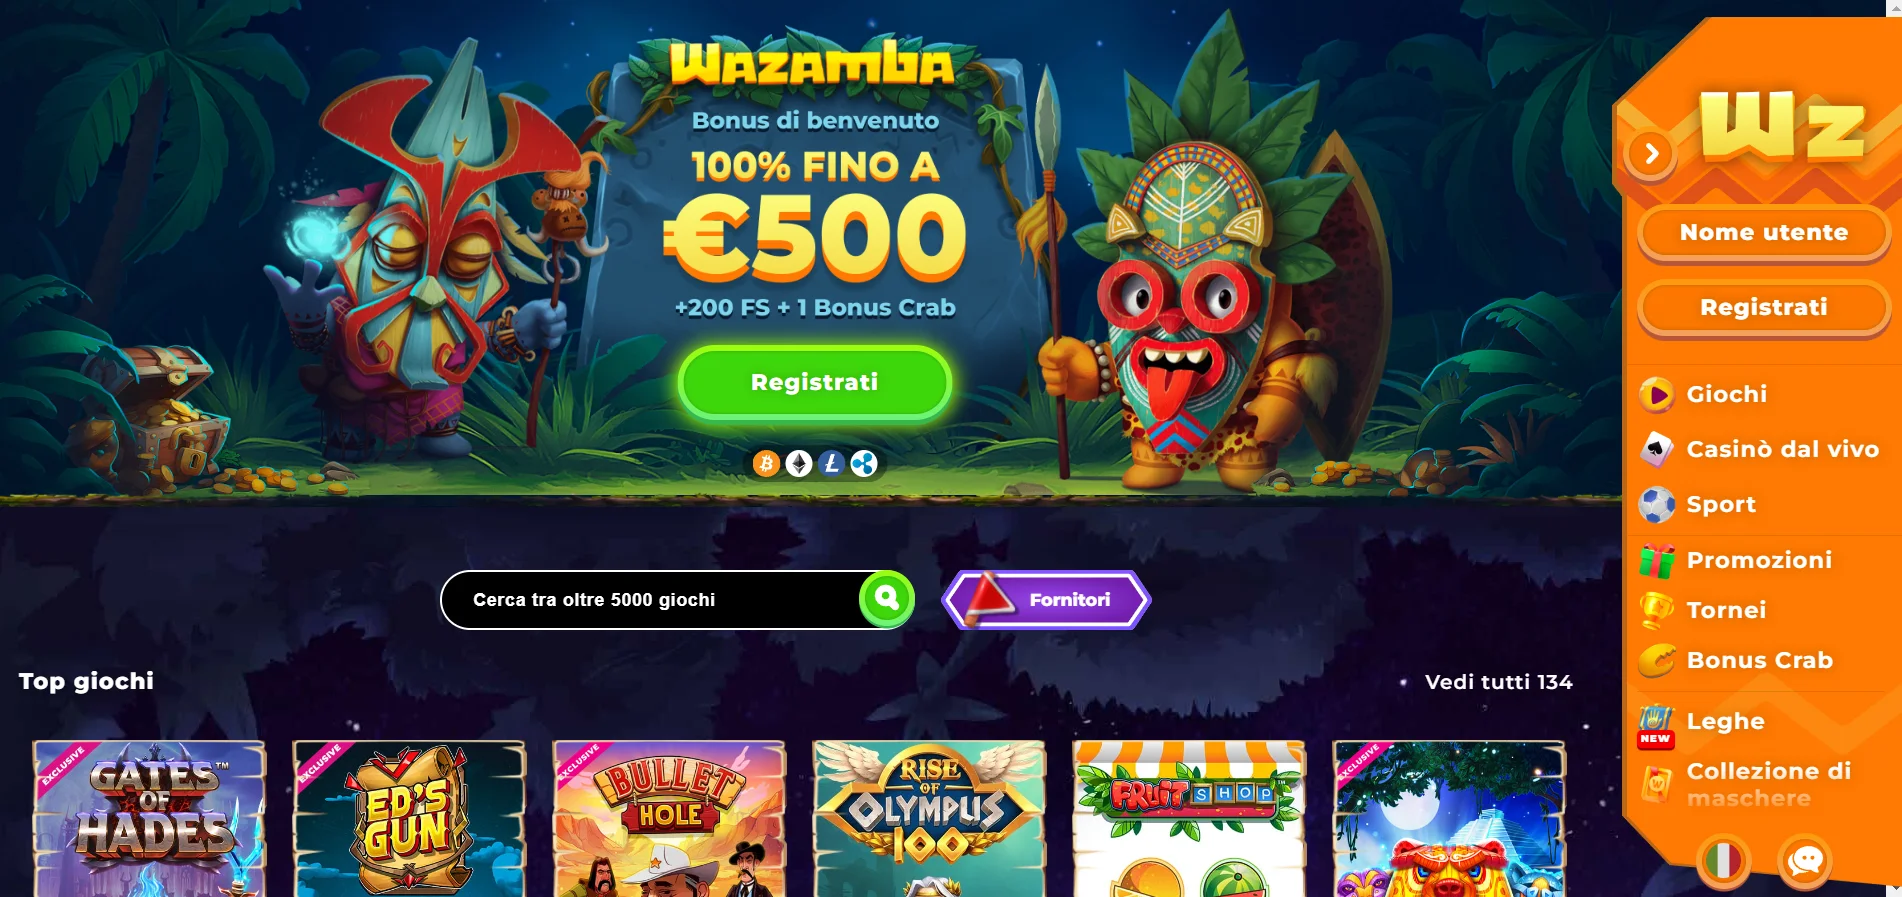 Wazamba casino bonus